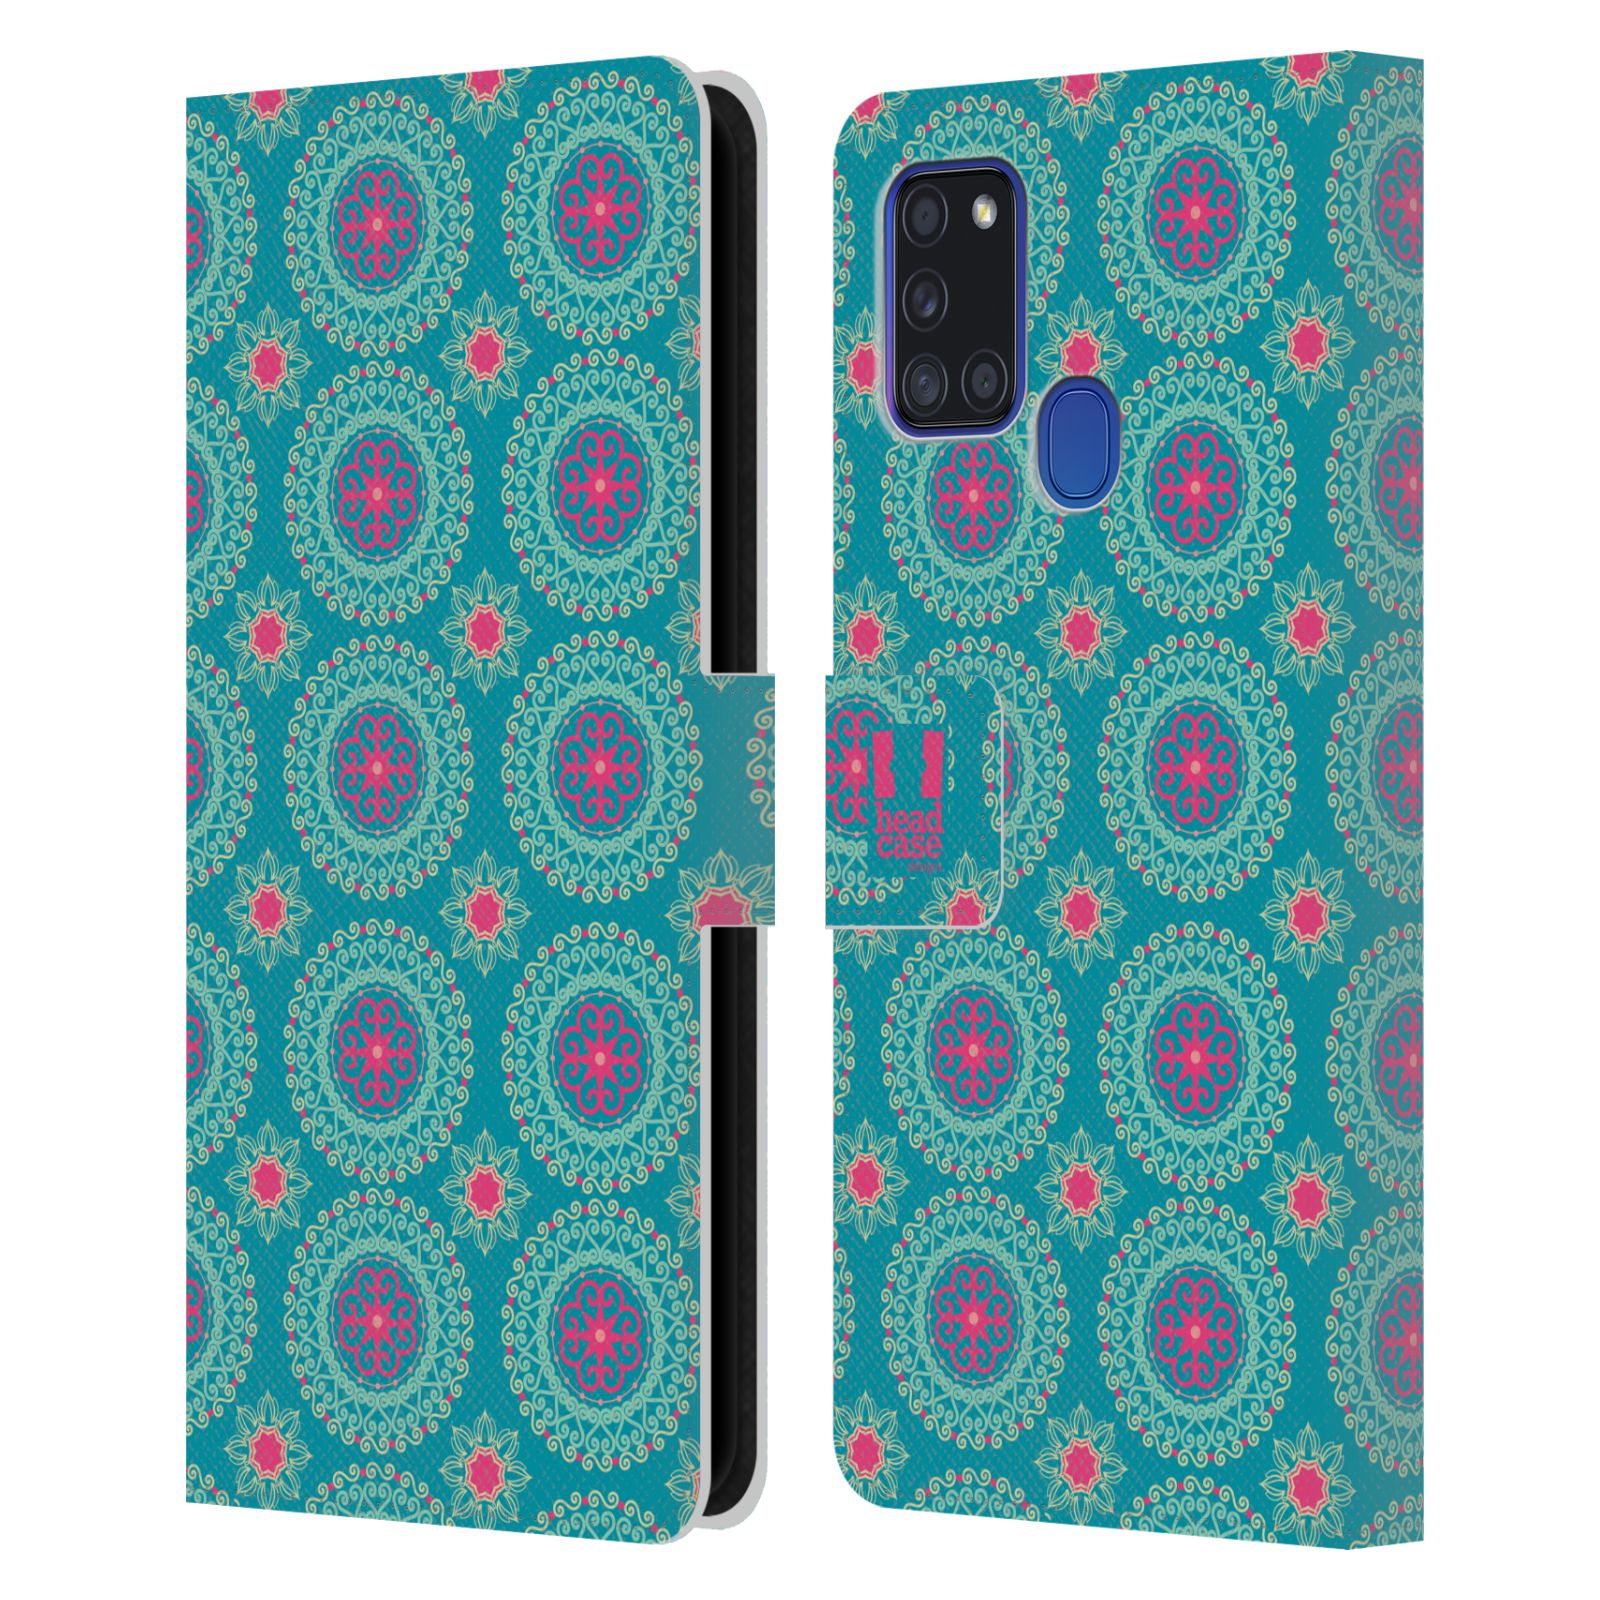 HEAD CASE Flipové pouzdro pro mobil Samsung Galaxy A21s Slovanský vzor modrá/tyrkysová barva kaleidoskop